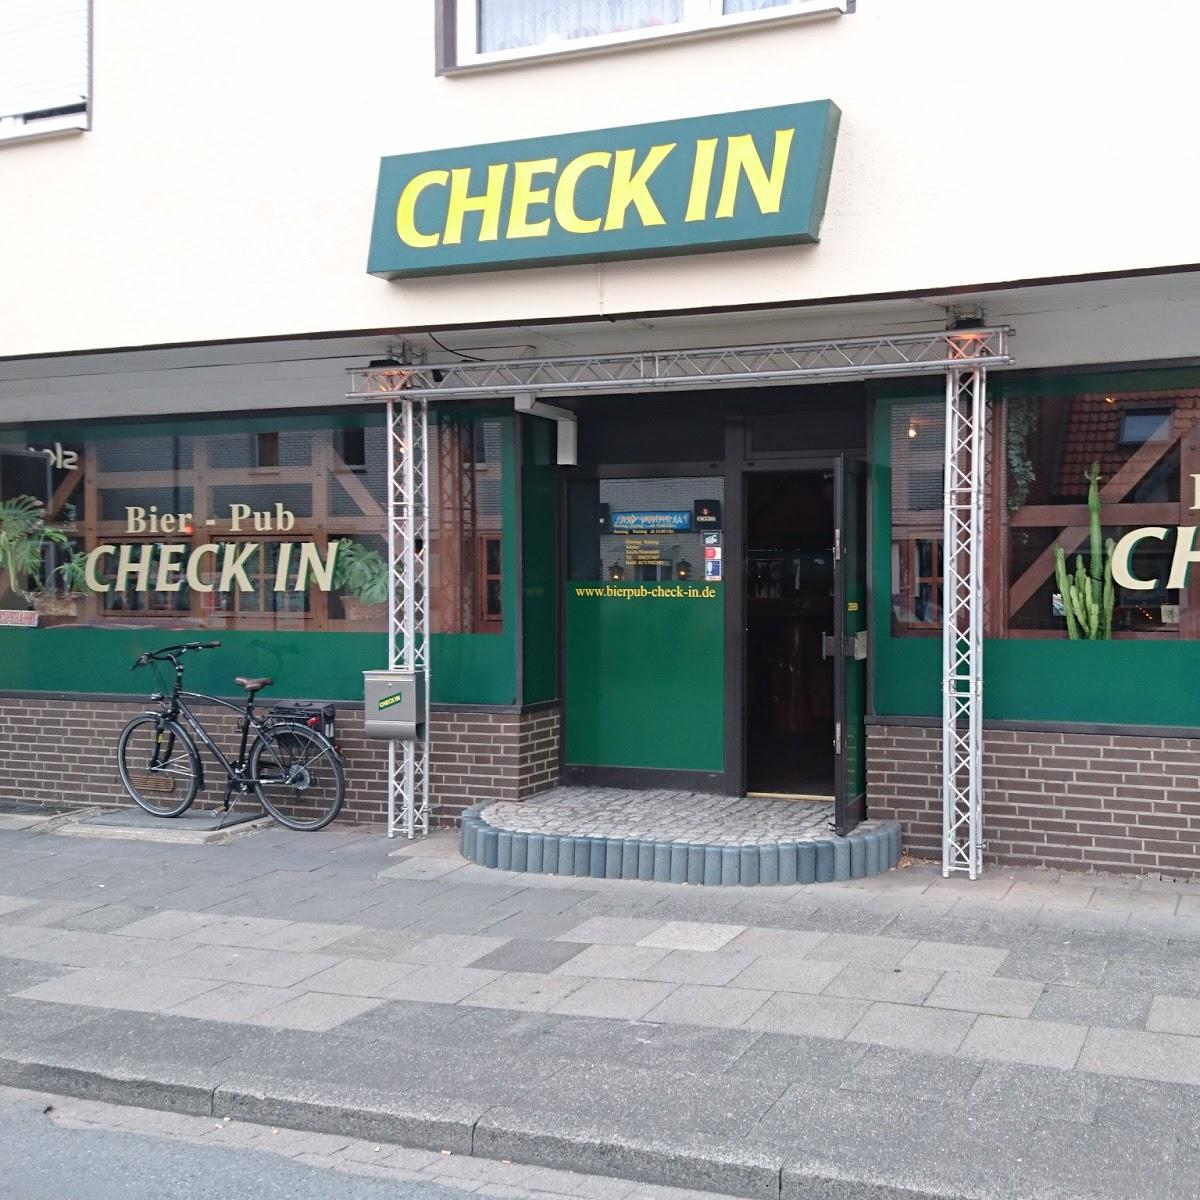 Restaurant "Bier-Pub CHECK IN" in Versmold